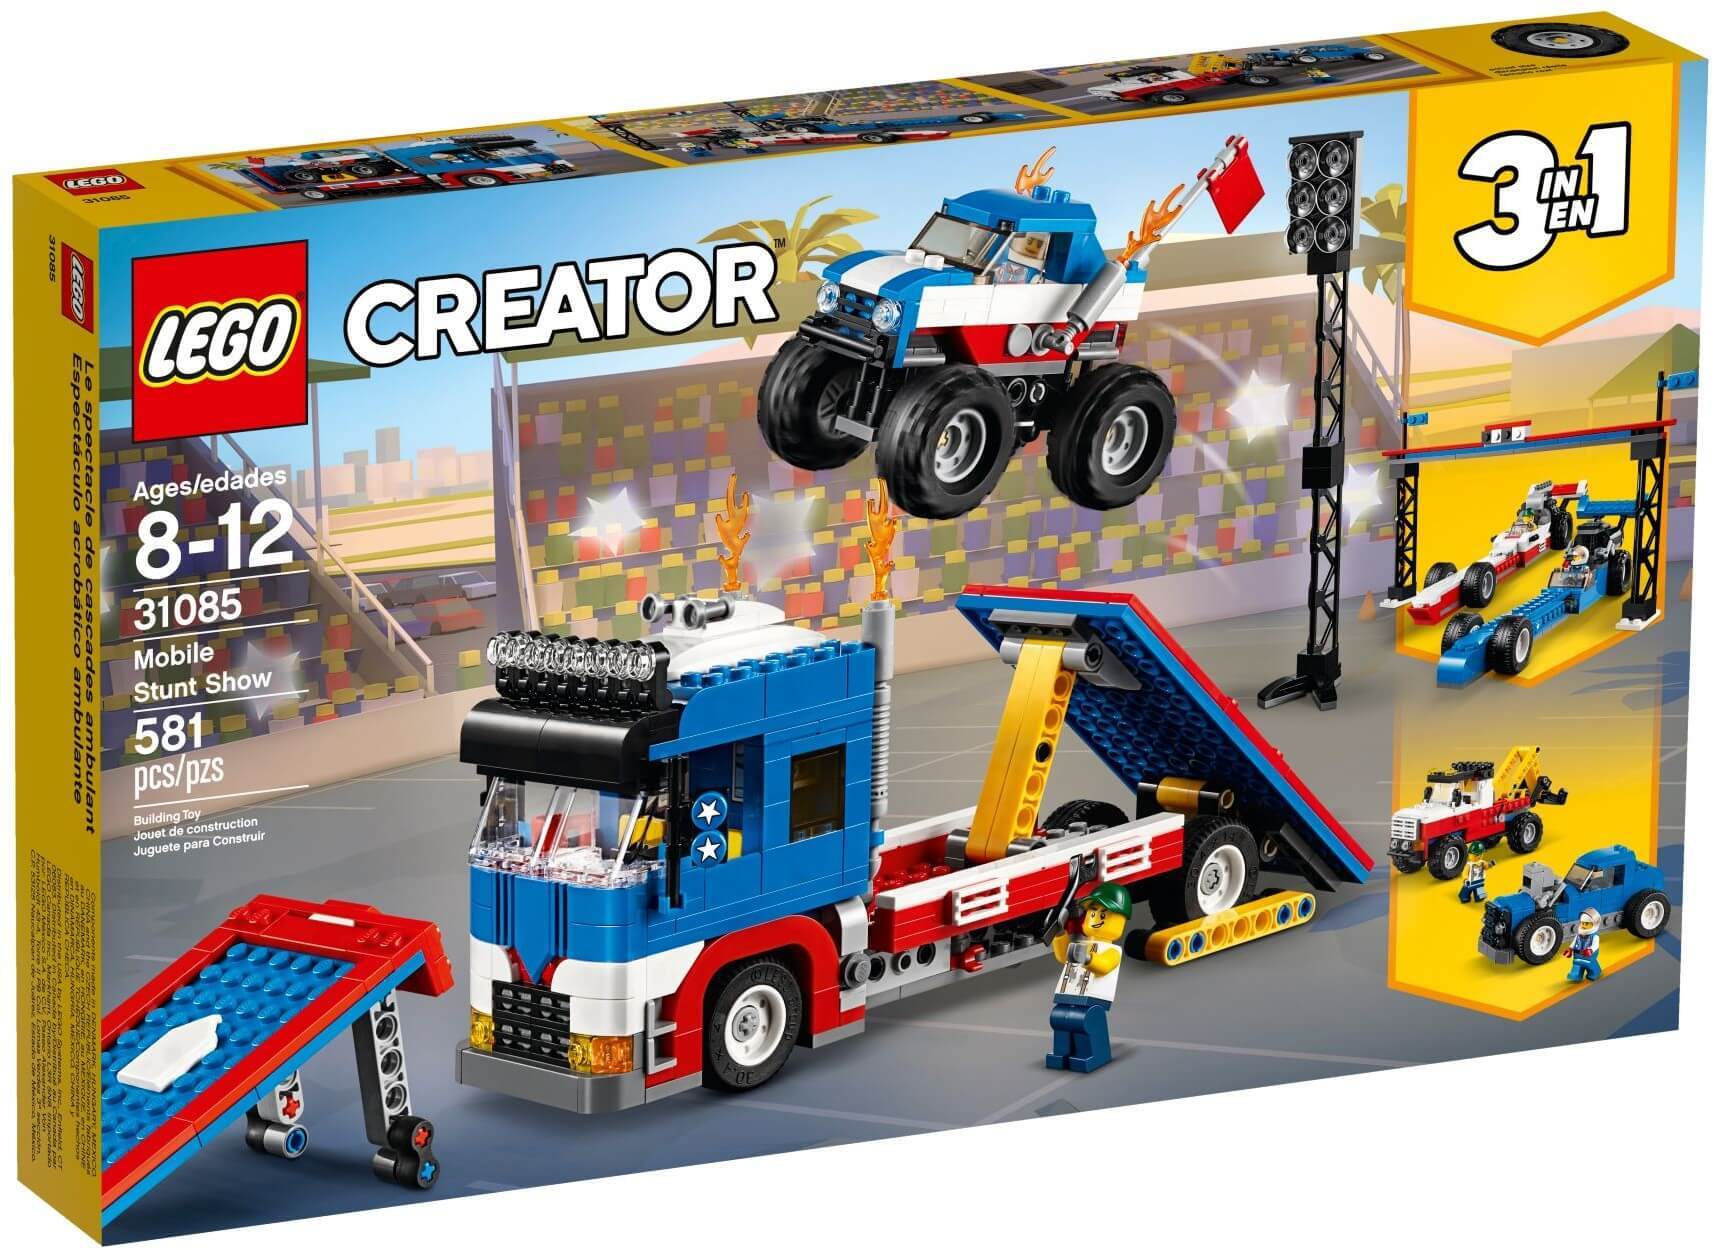 Đồ chơi lắp ghép Lego Creator 31085 - Xếp hình đội xe biểu diễn 3-trong-1